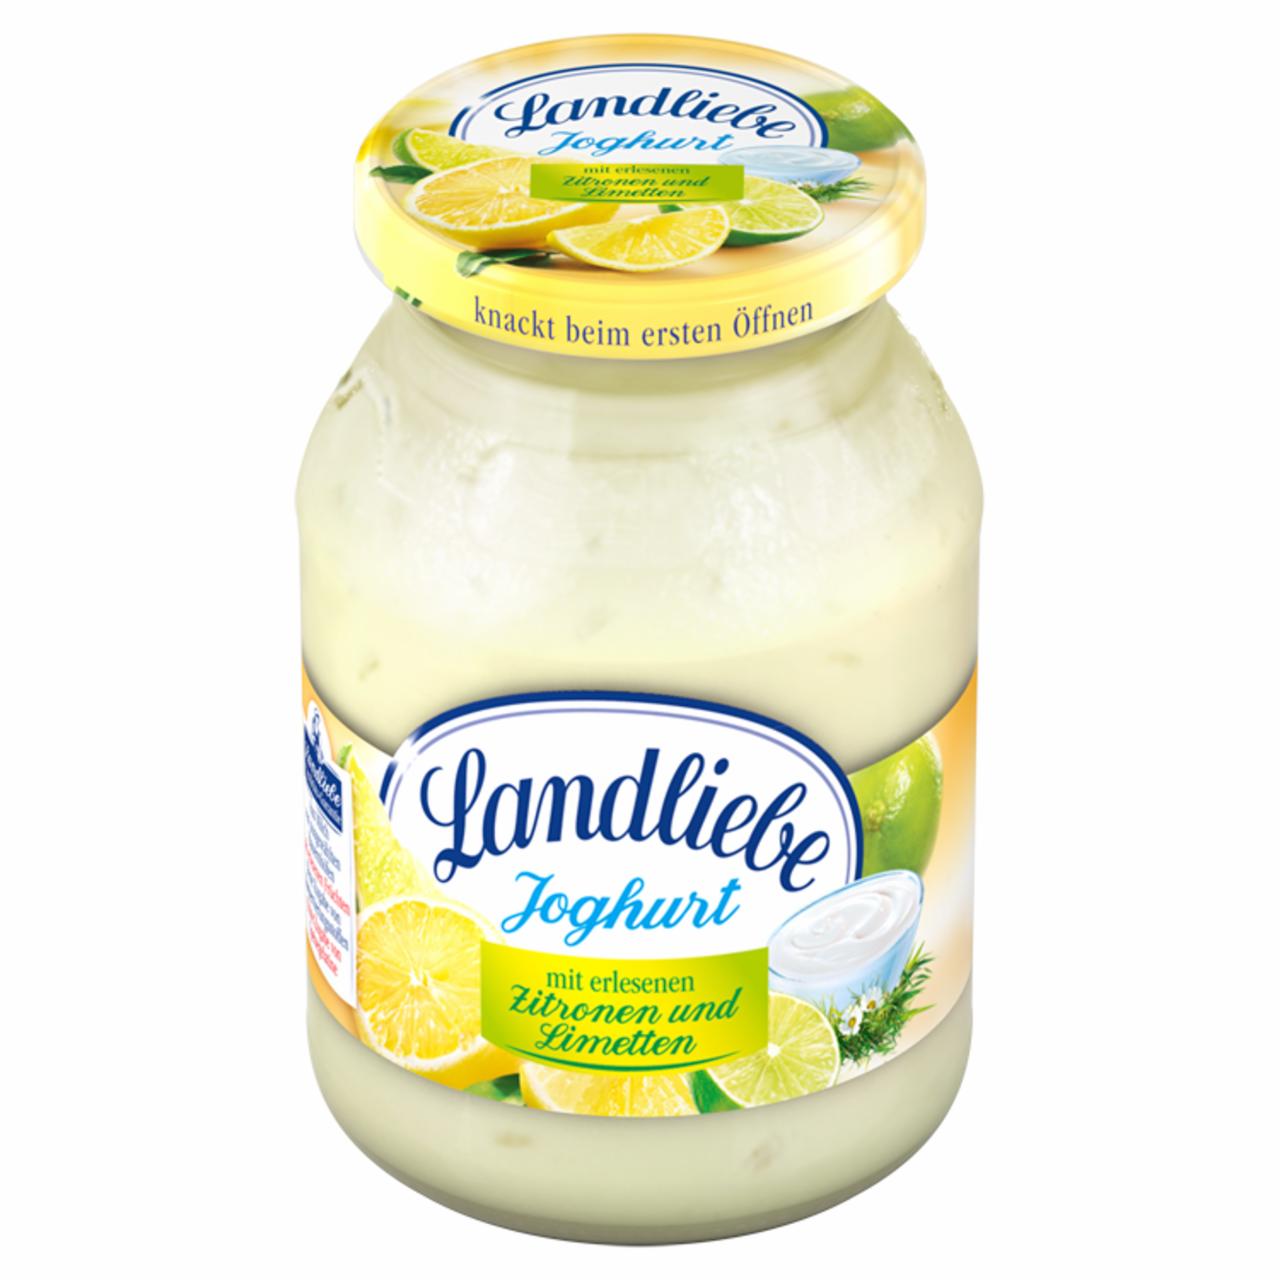 Képek - Landliebe élőflórás joghurt citrommal és lime-mal 500 g